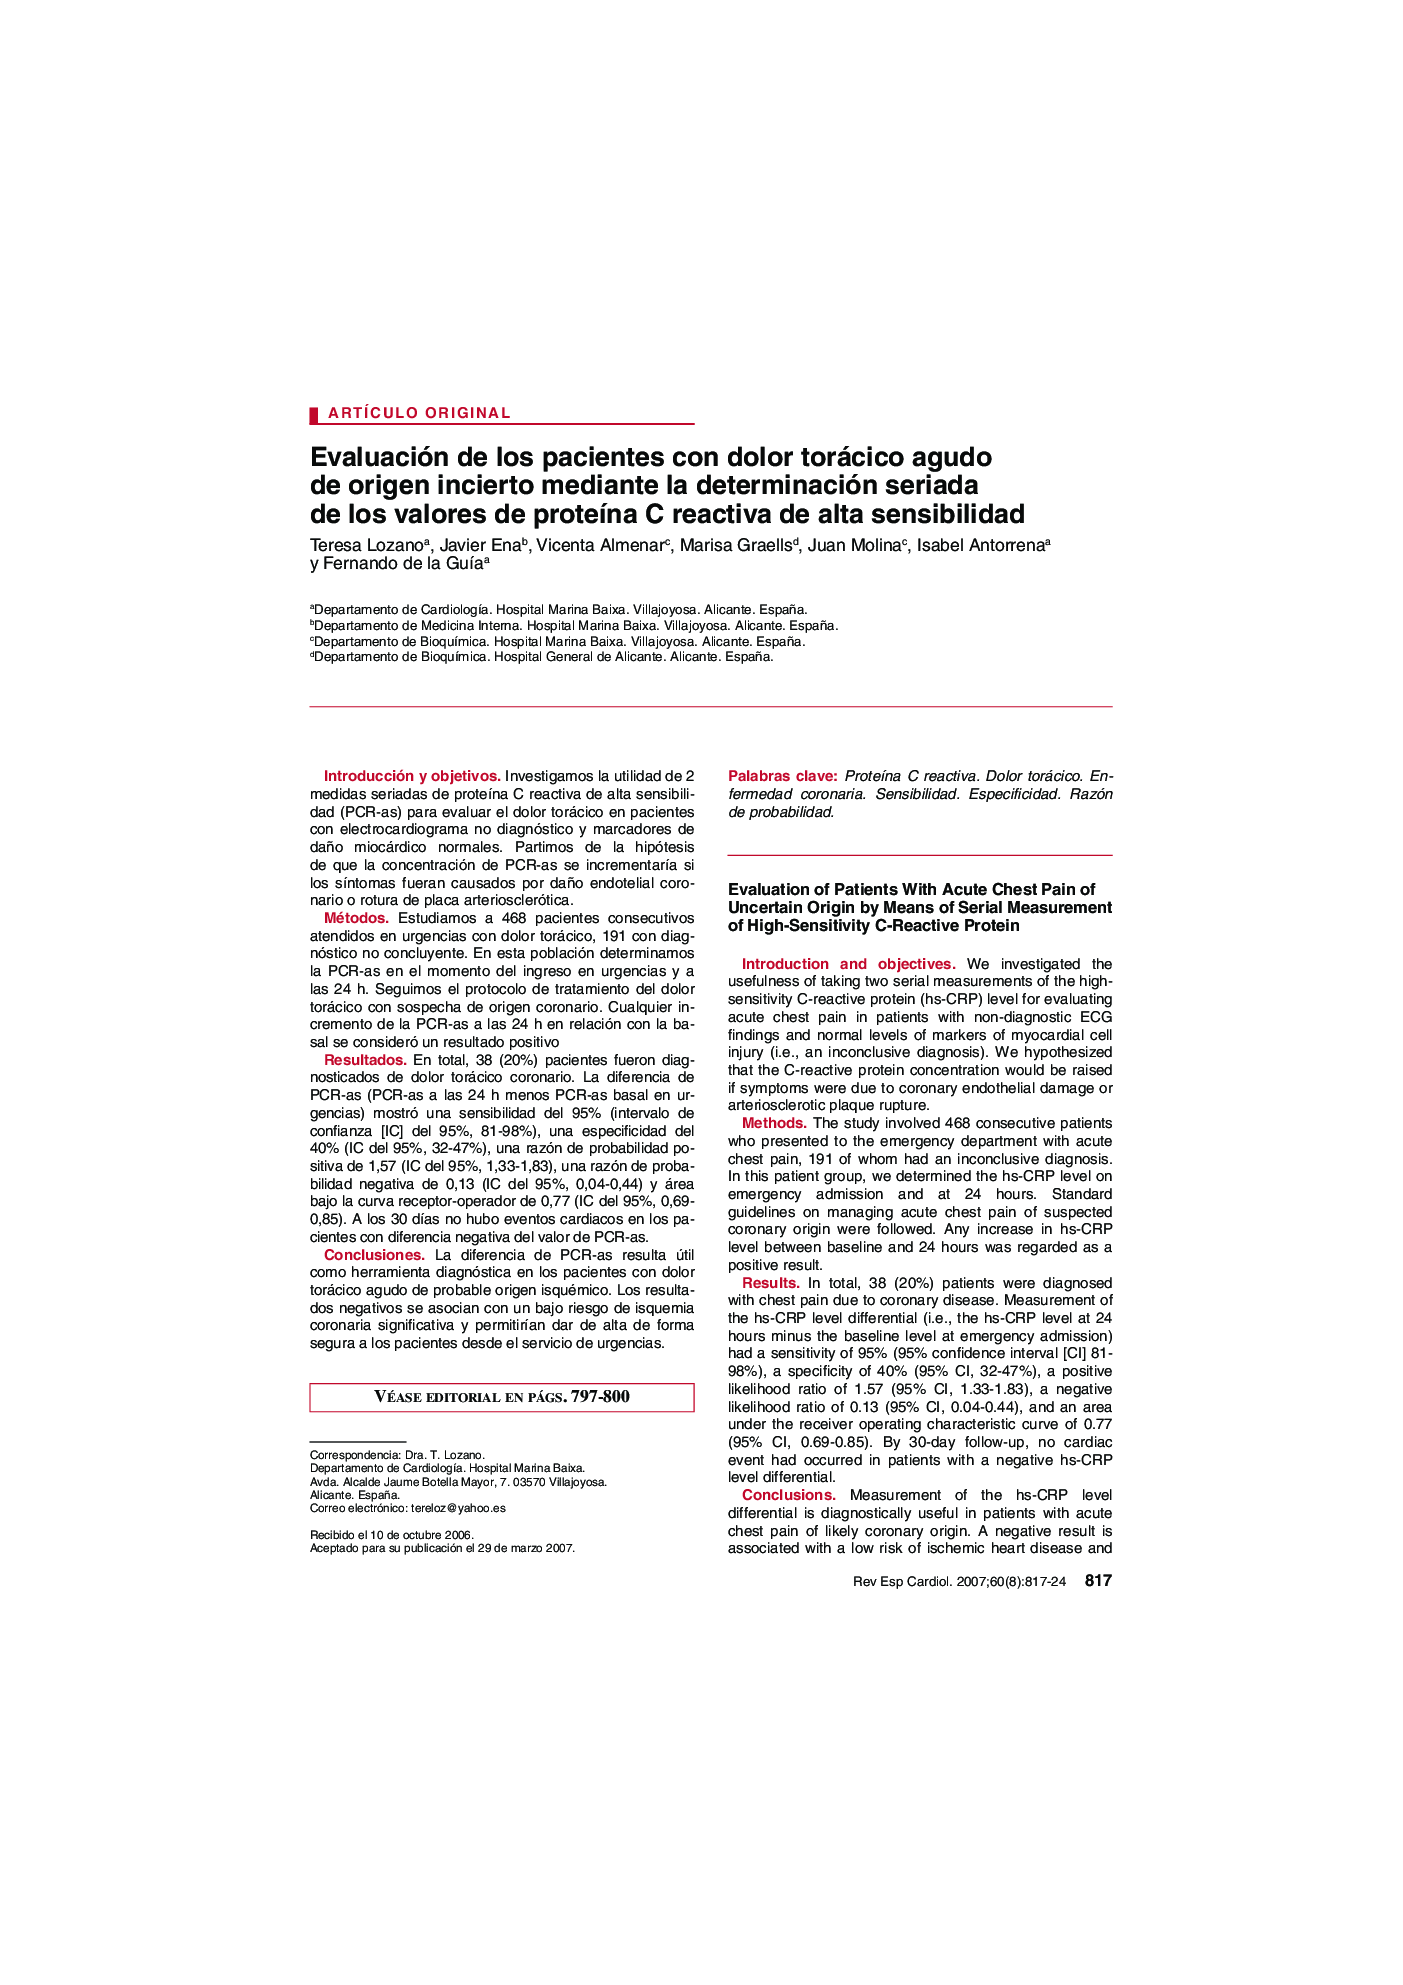 Evaluación de los pacientes con dolor torácico agudo de origen incierto mediante la determinación seriada de los valores de proteÃ­na C reactiva de alta sensibilidad